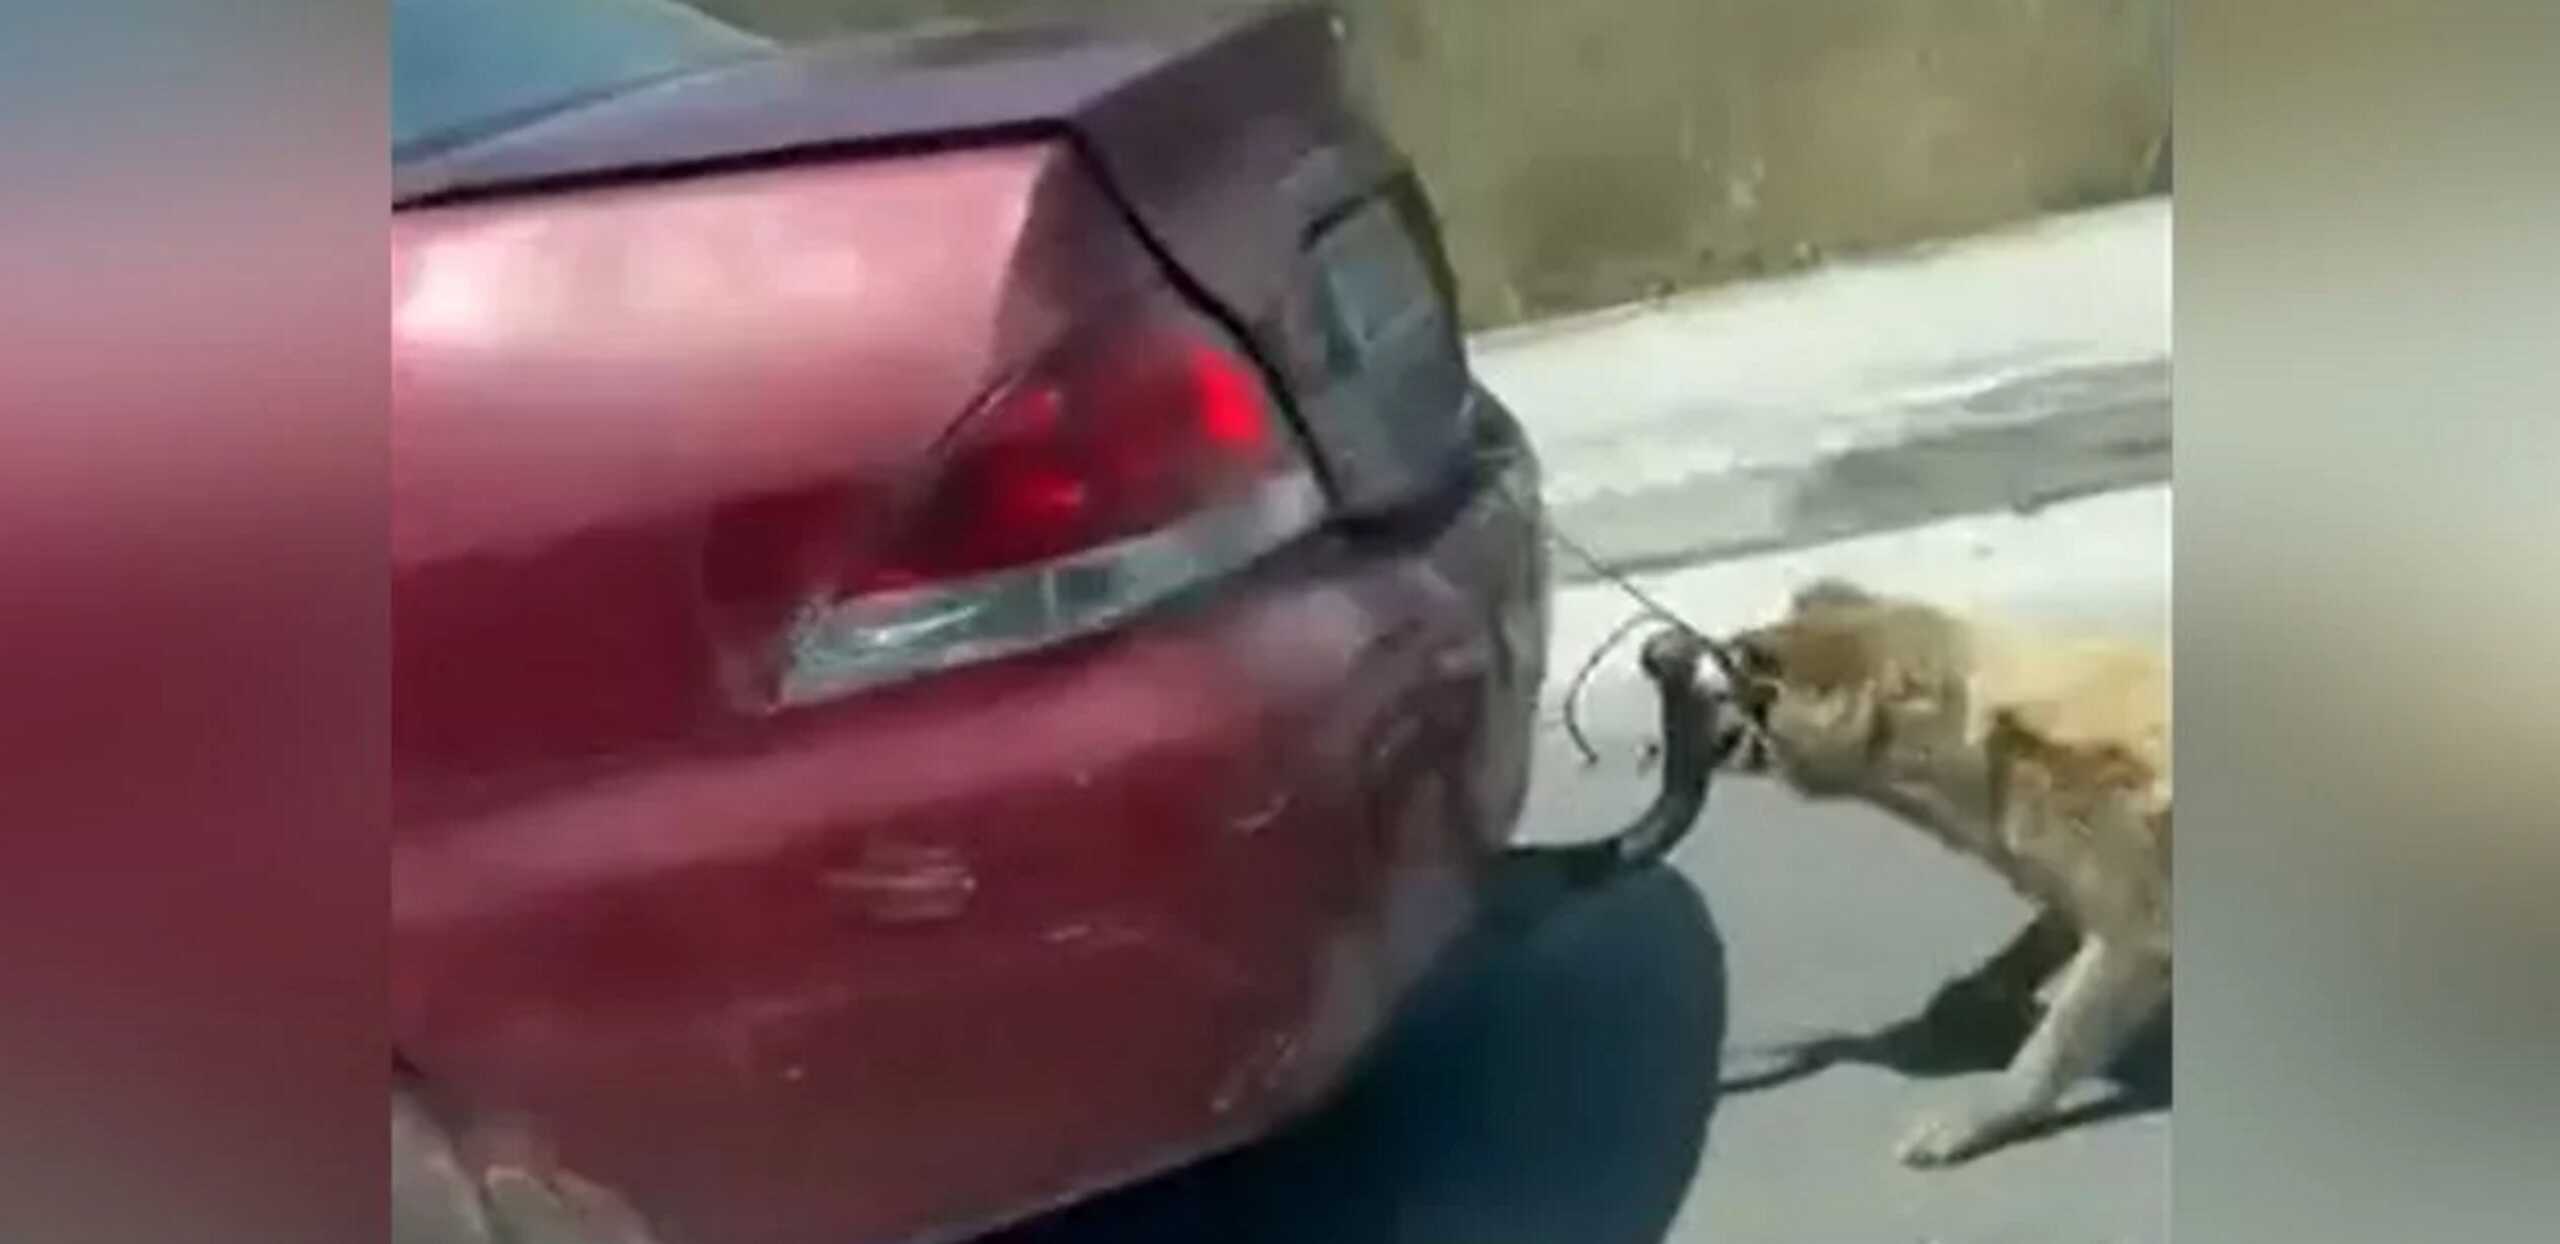 Ζάκυνθος: Πρόστιμο 30.000 ευρώ στον οδηγό που έσερνε σκύλο δεμένο στον κοτσαδόρο αυτοκίνητου